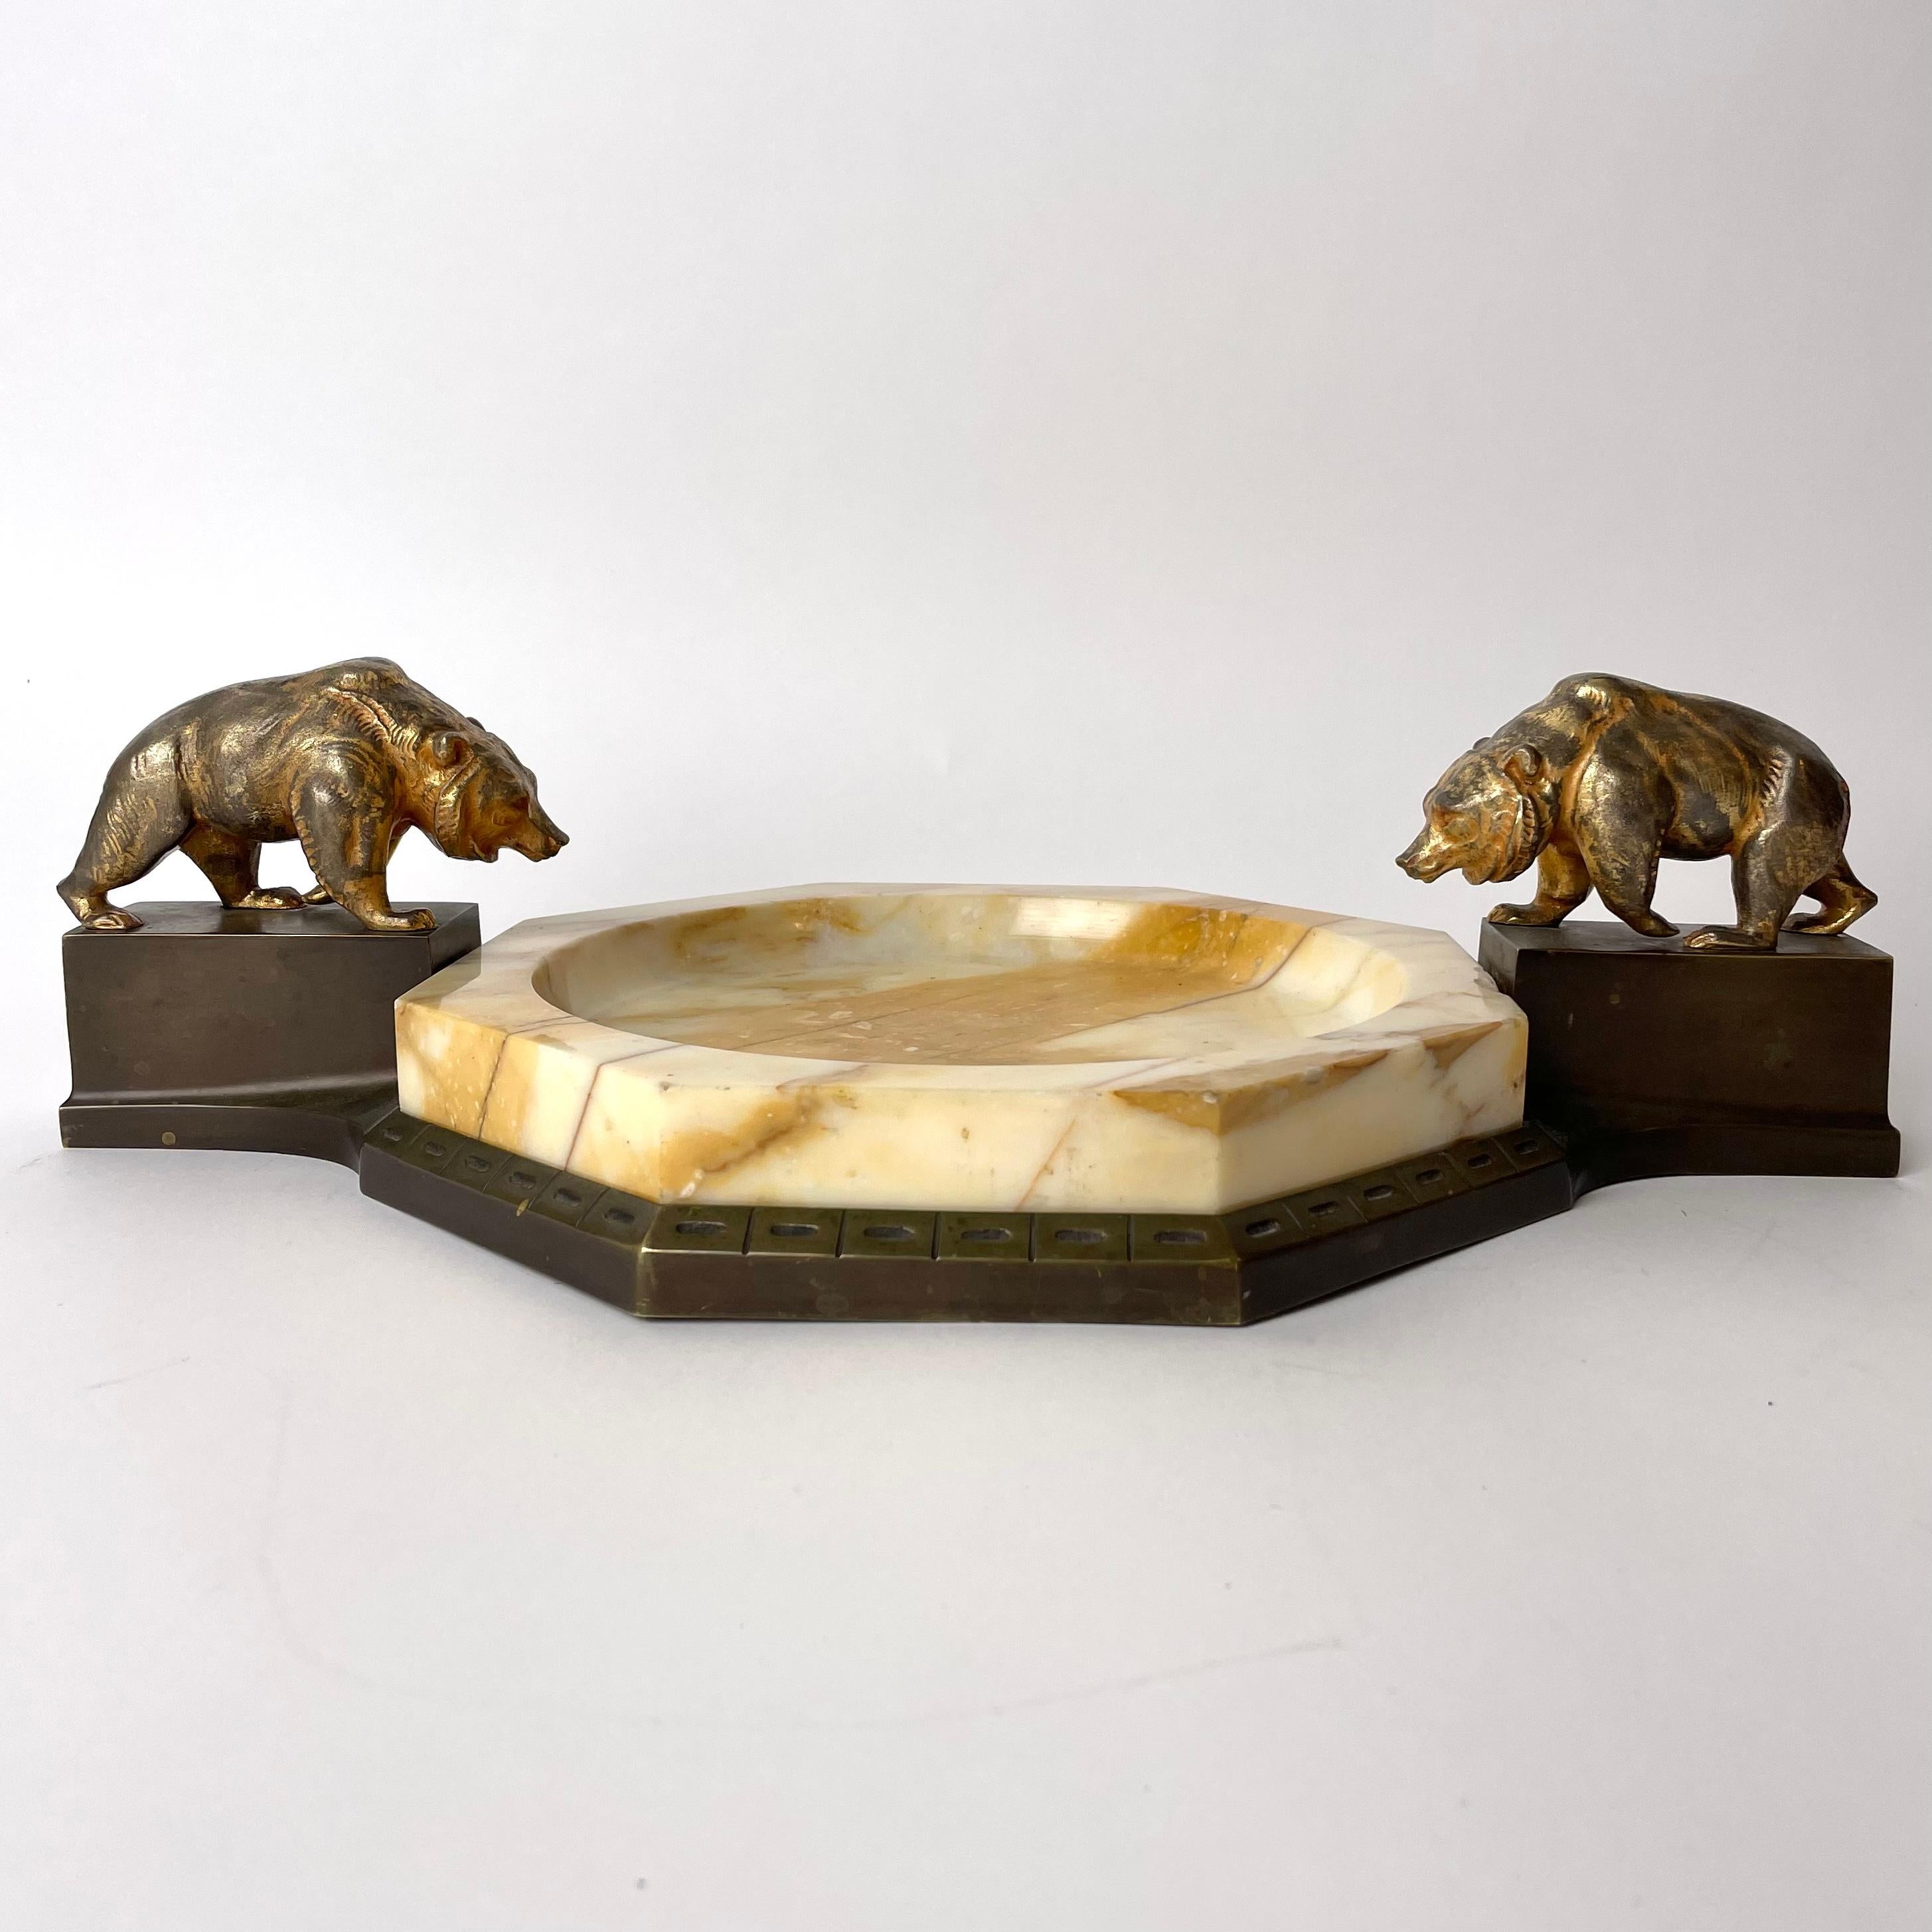 Eine kühle Schale aus Marmor und Bronze. Schön verziert mit vergoldeten Bären. Art Deco aus dem  1920s. Abgenutzte Vergoldung an den Bären.

Alters- und gebrauchsbedingte Abnutzungserscheinungen.